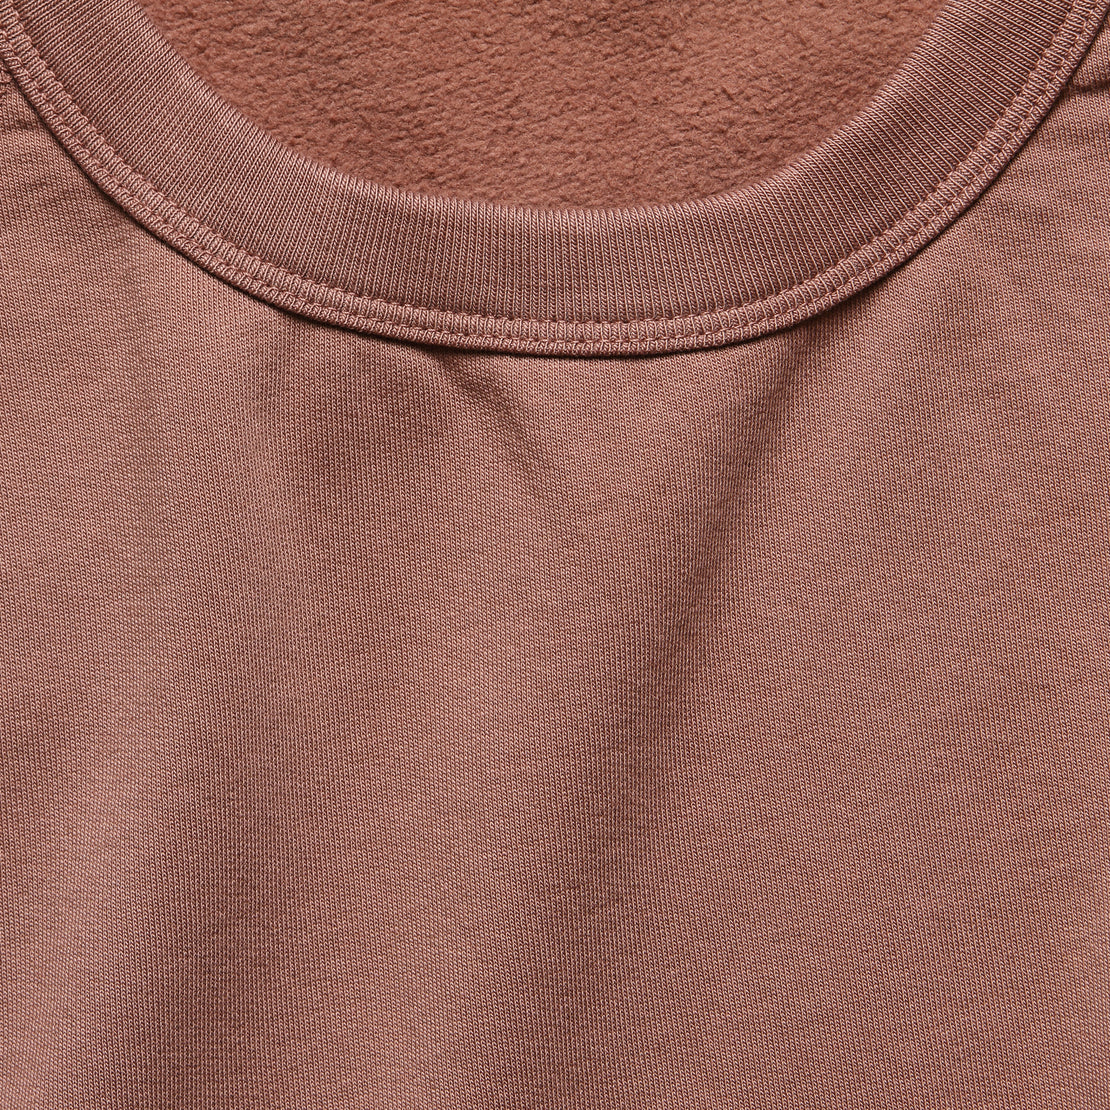 Supima Fleece Sweatshirt - Nutmeg - Save Khaki - STAG Provisions - Tops - Fleece / Sweatshirt